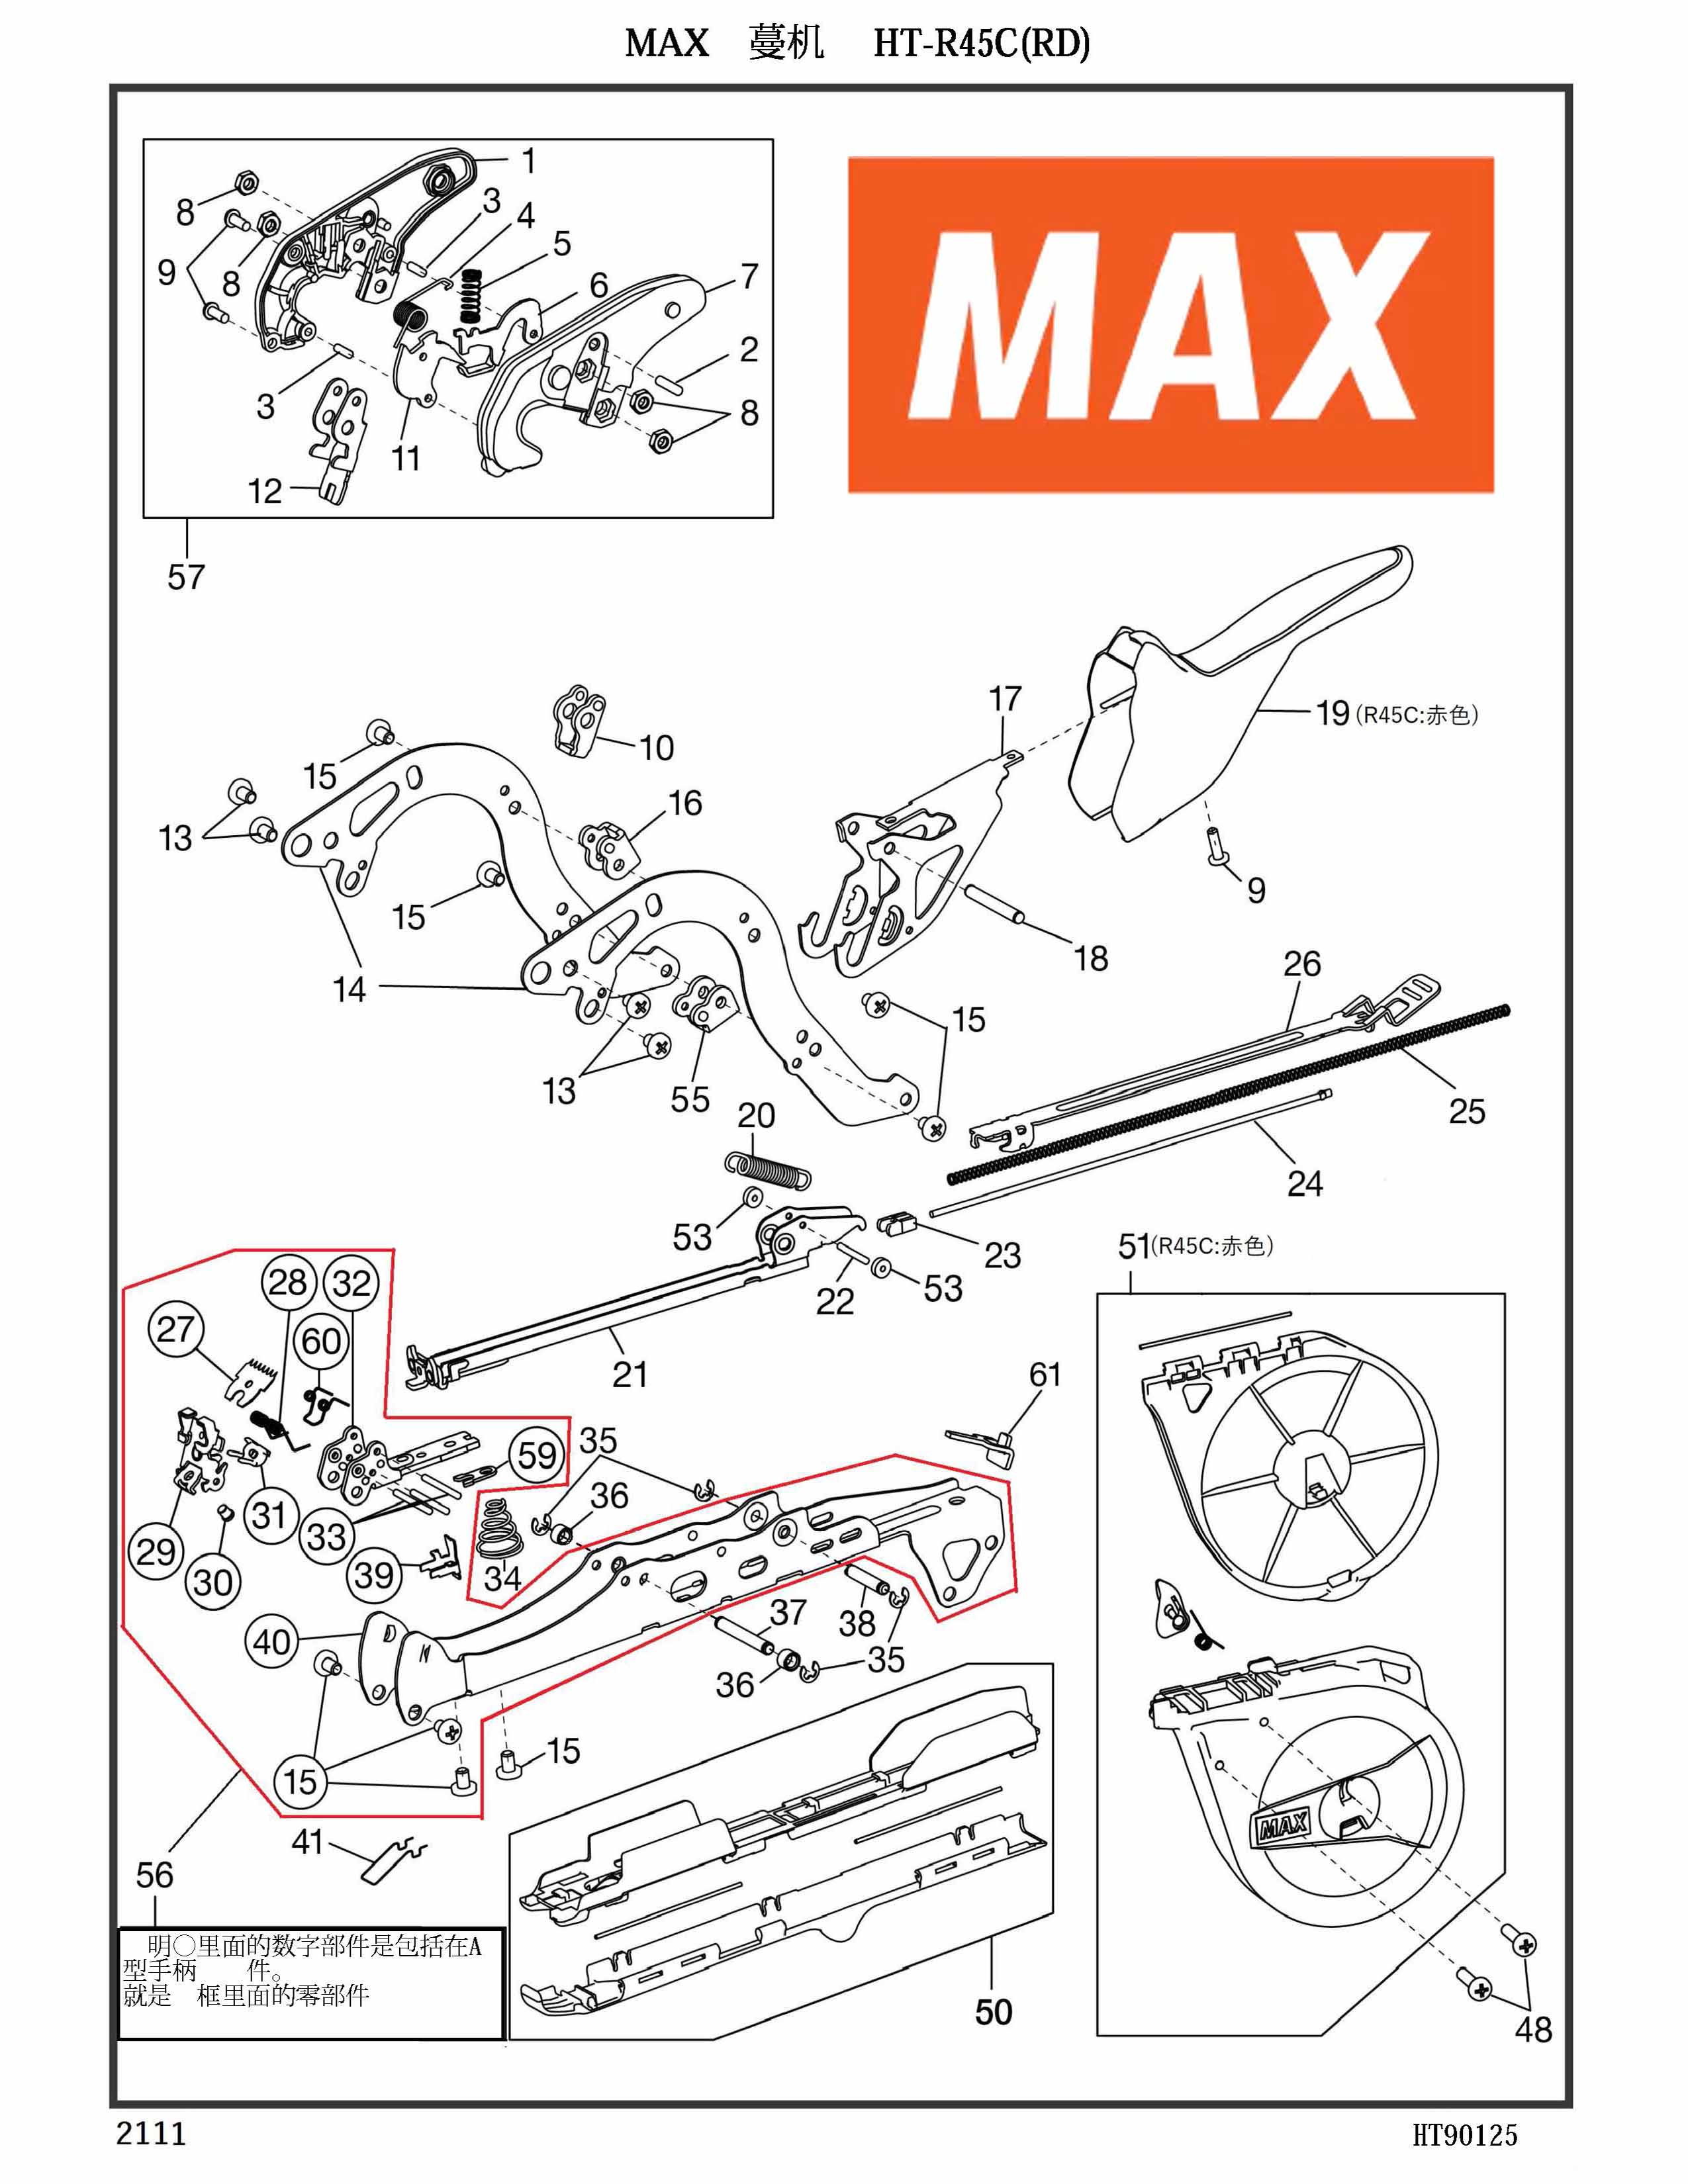 MAX Tapener Part AA05715 SCREW BIND 4X16 (P) Fits MAX HT-R45L(O) R45C(RD) HT-R1 HT-R2 #48